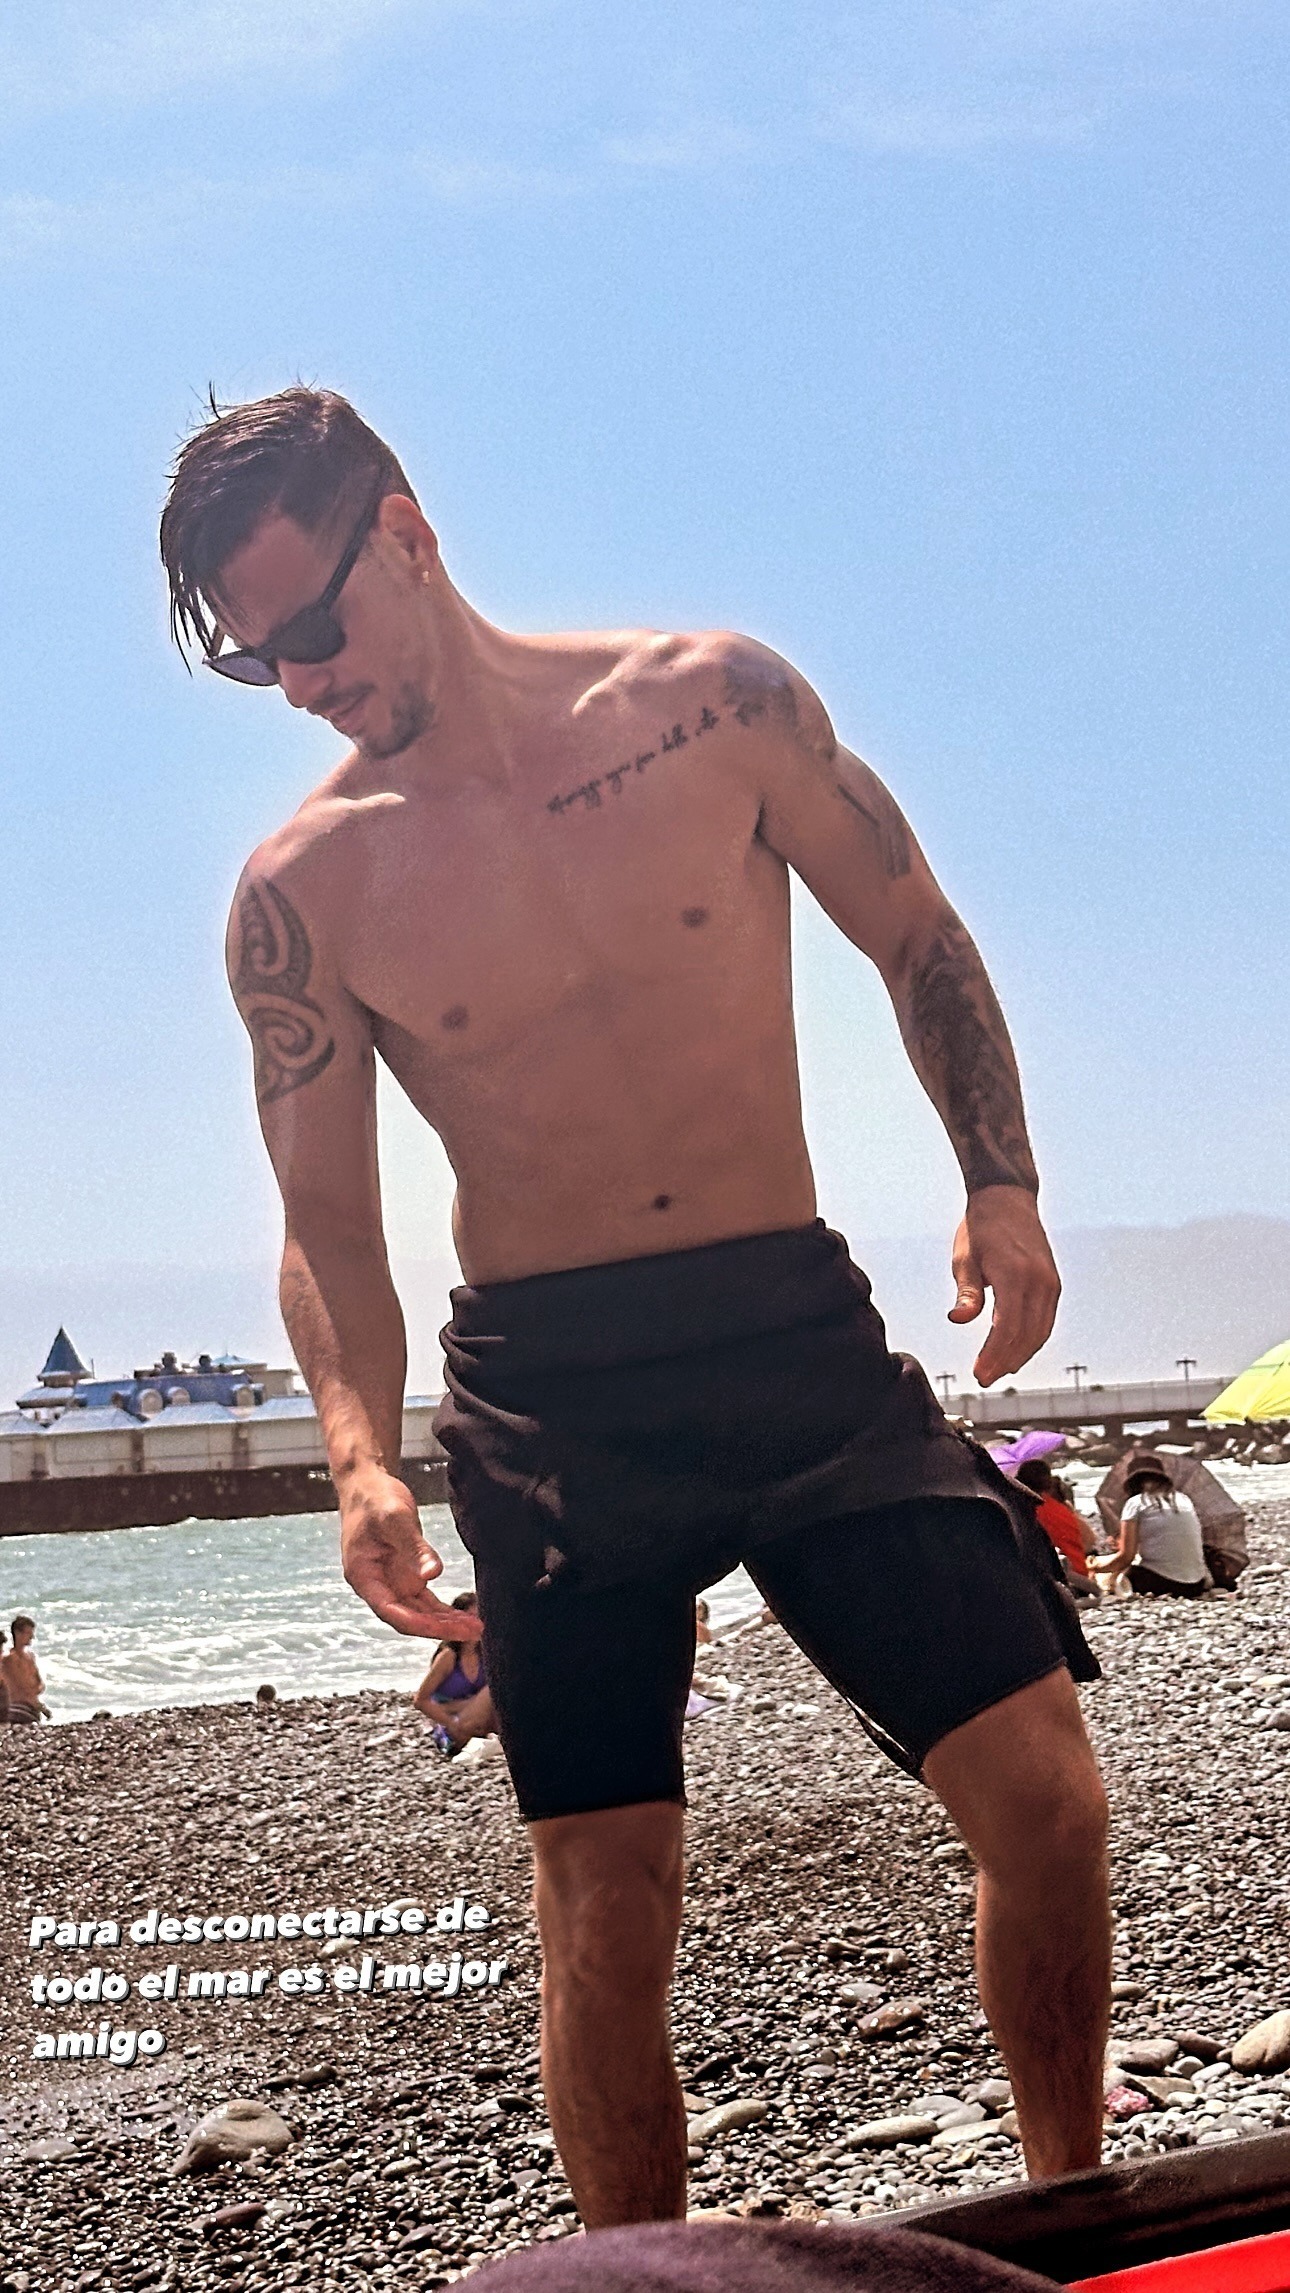 Anthony Aranda disfrutando un día en la playa tras separación de Melissa Paredes. Fuente: Instagram